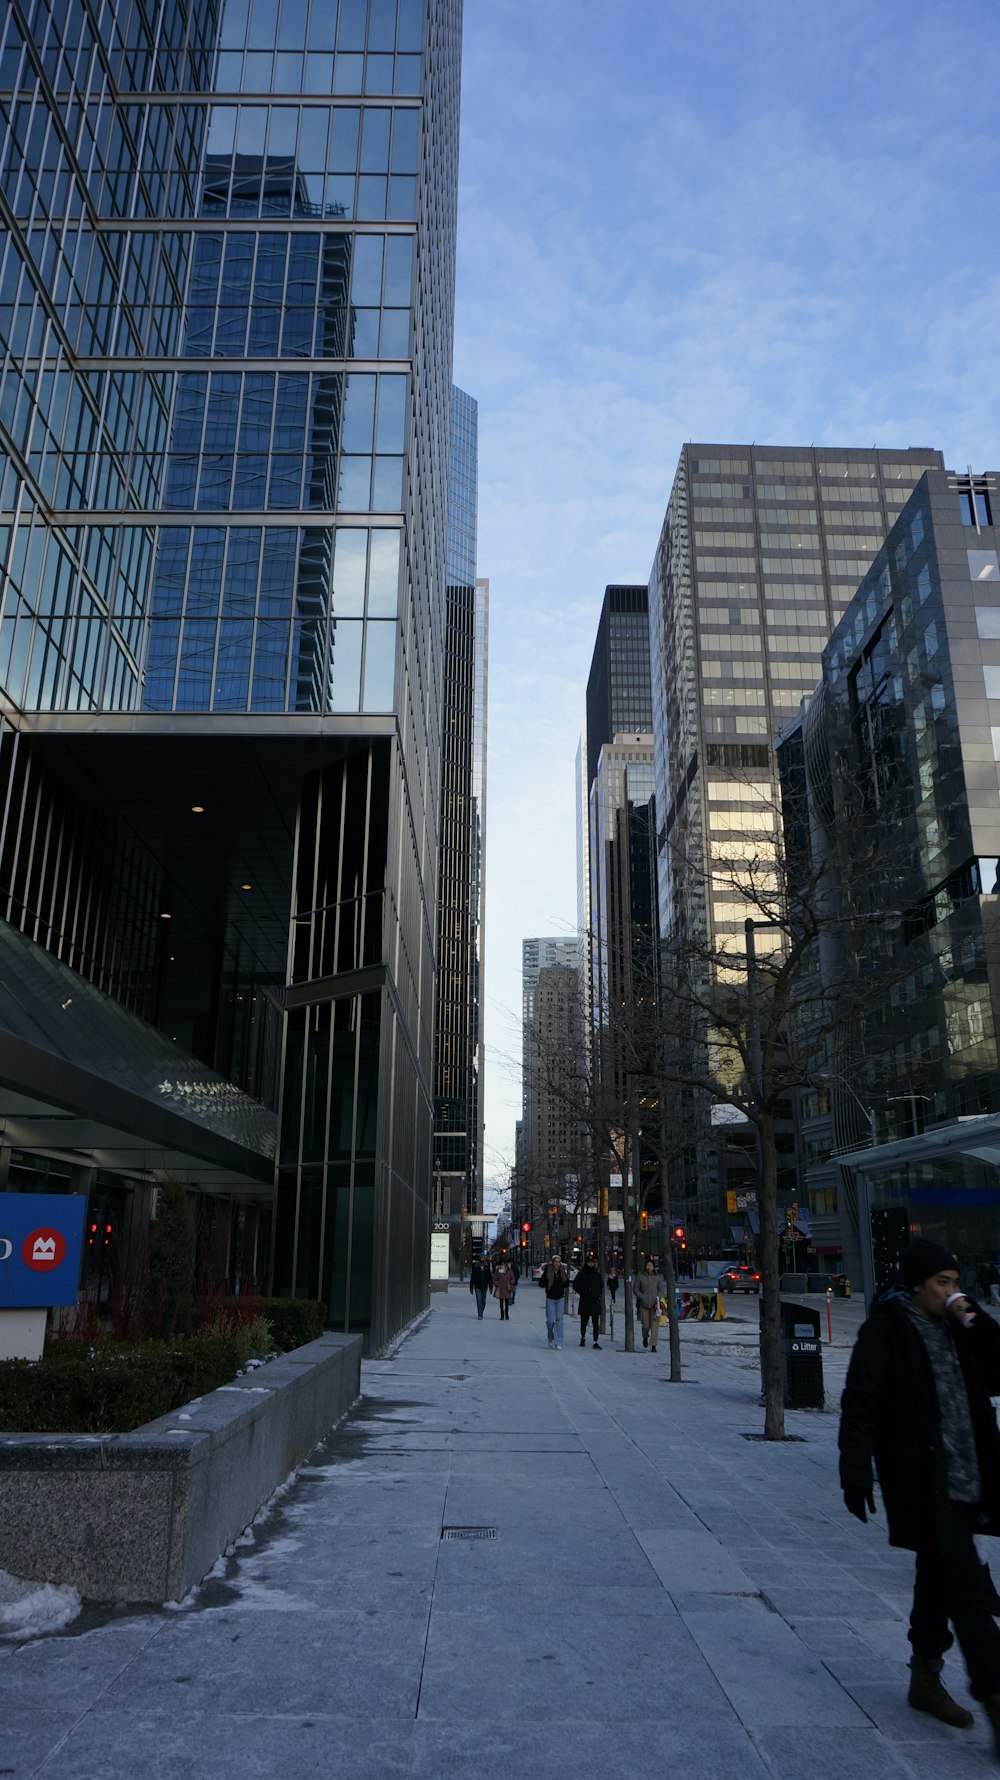 Un grupo de personas caminando por una acera junto a edificios altos